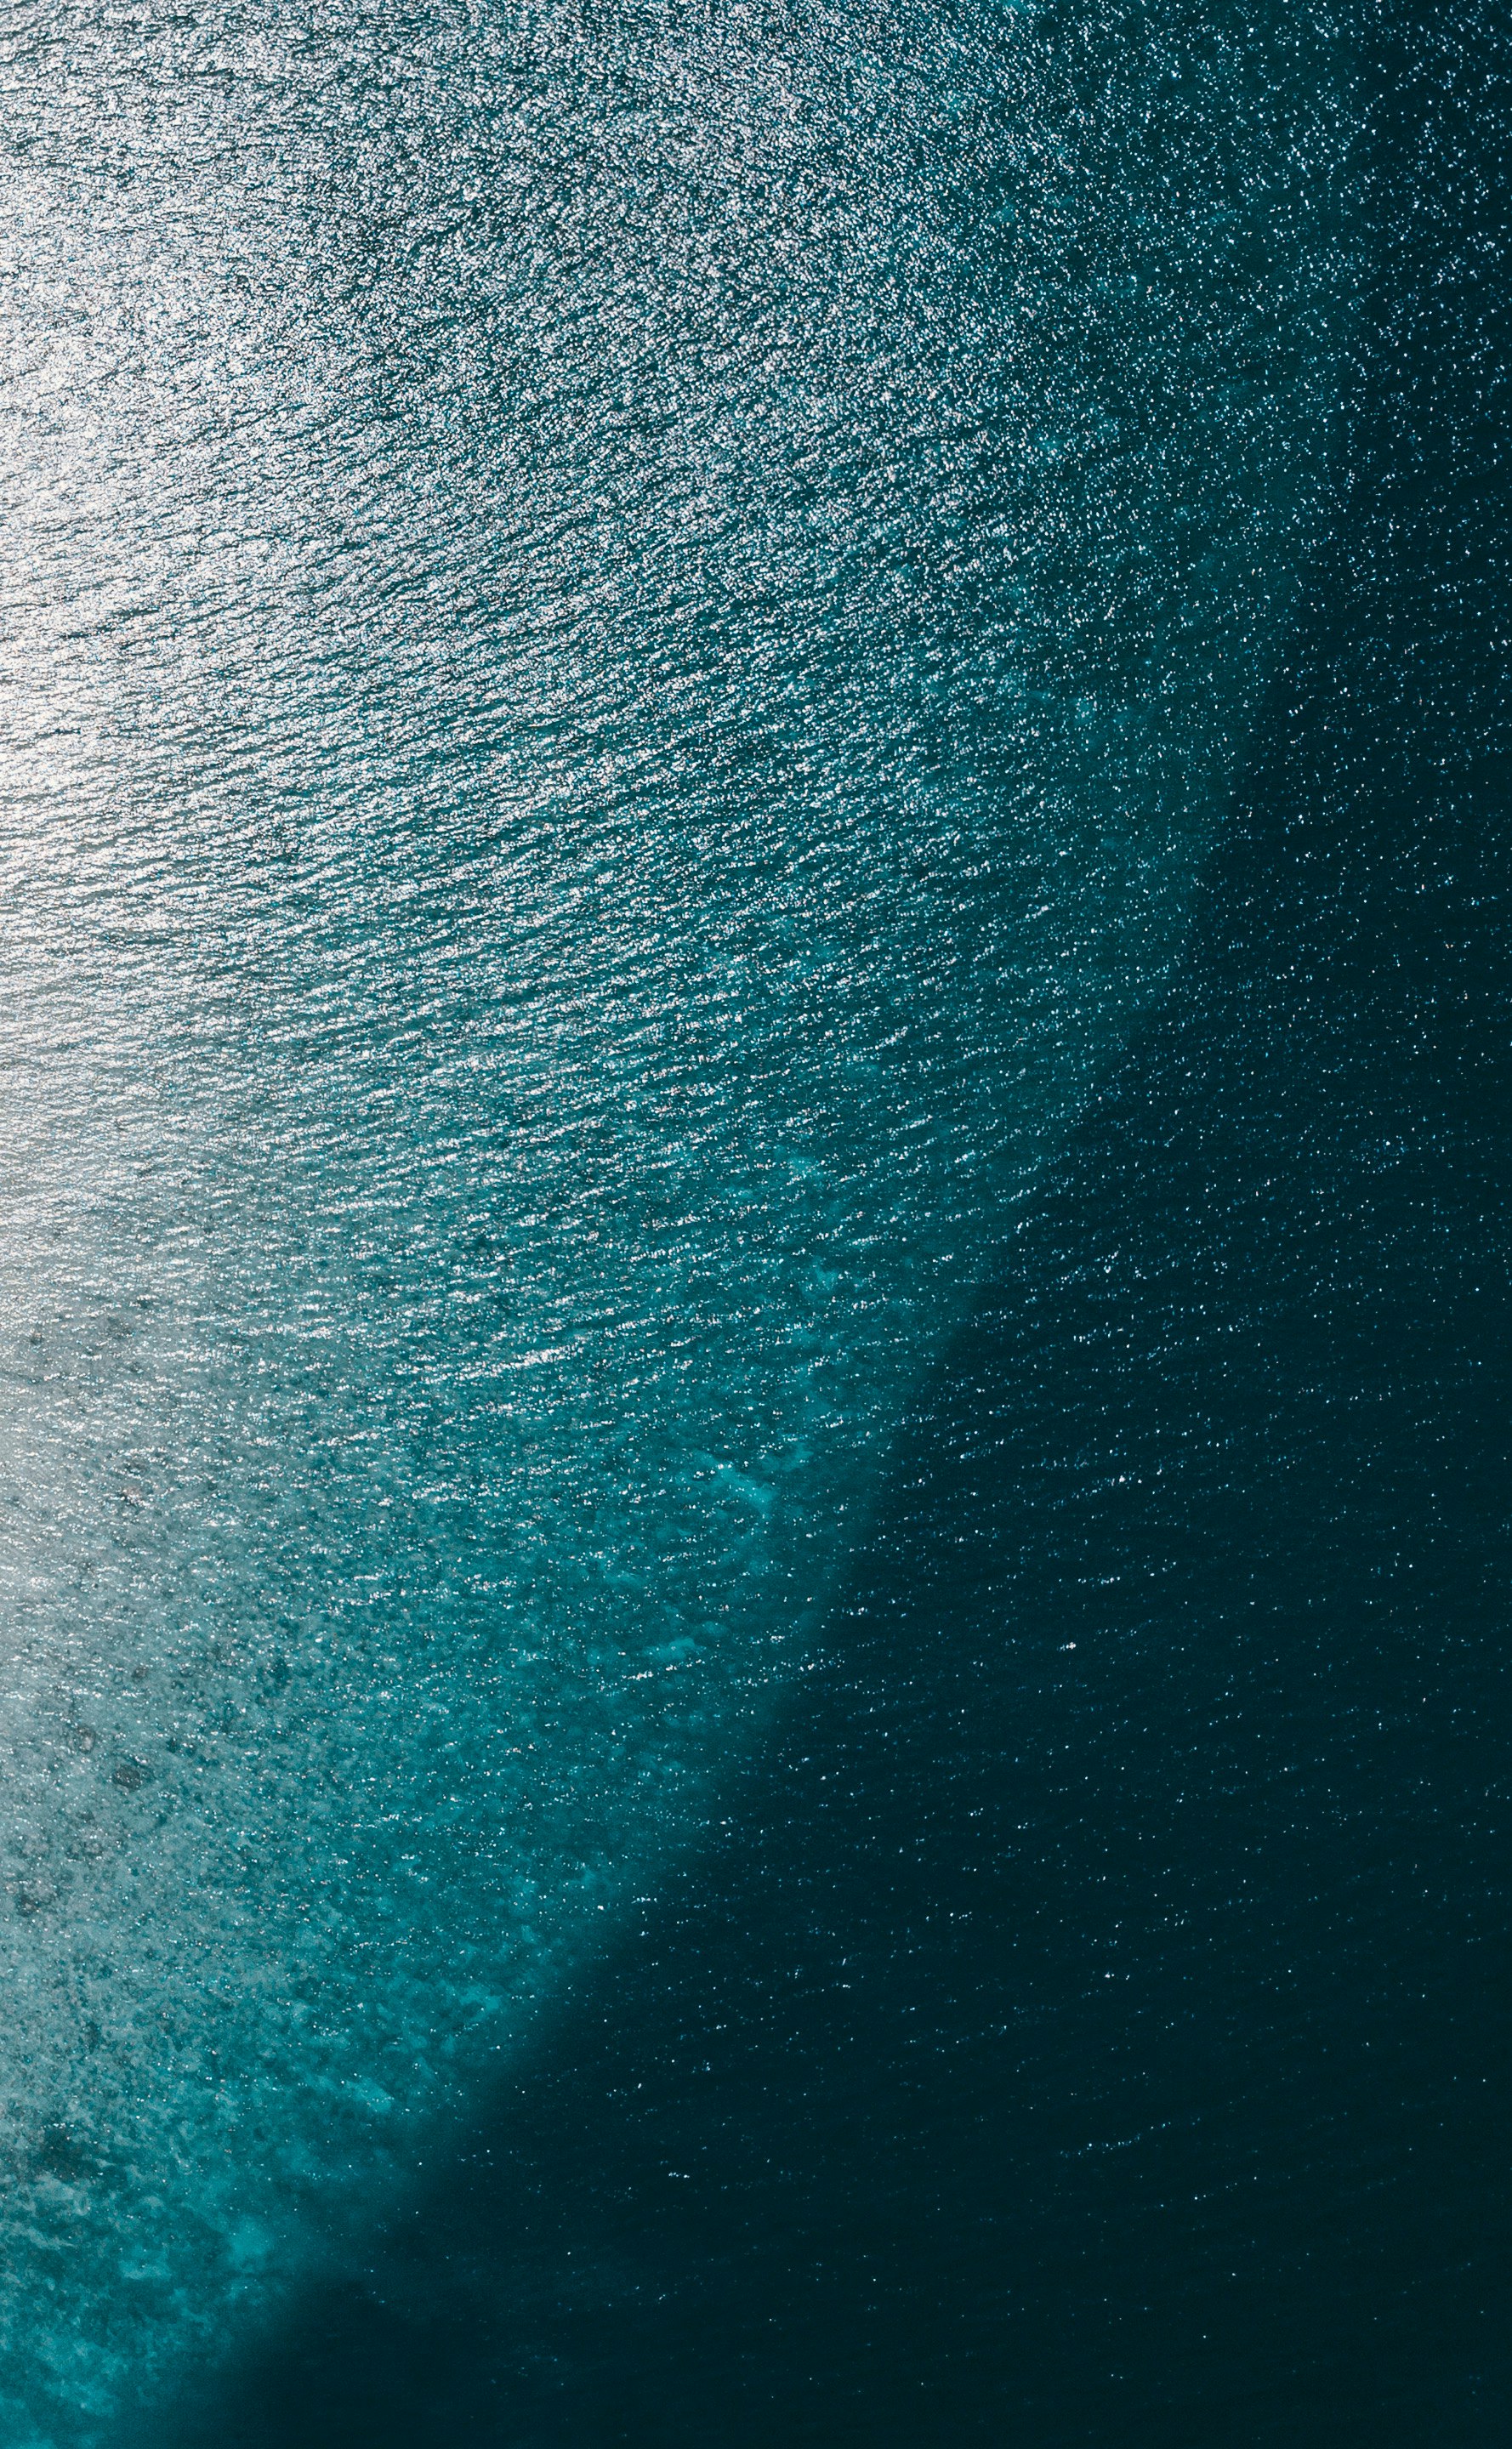 Shades of Ocean 

https://zedge.page.link/birdeye